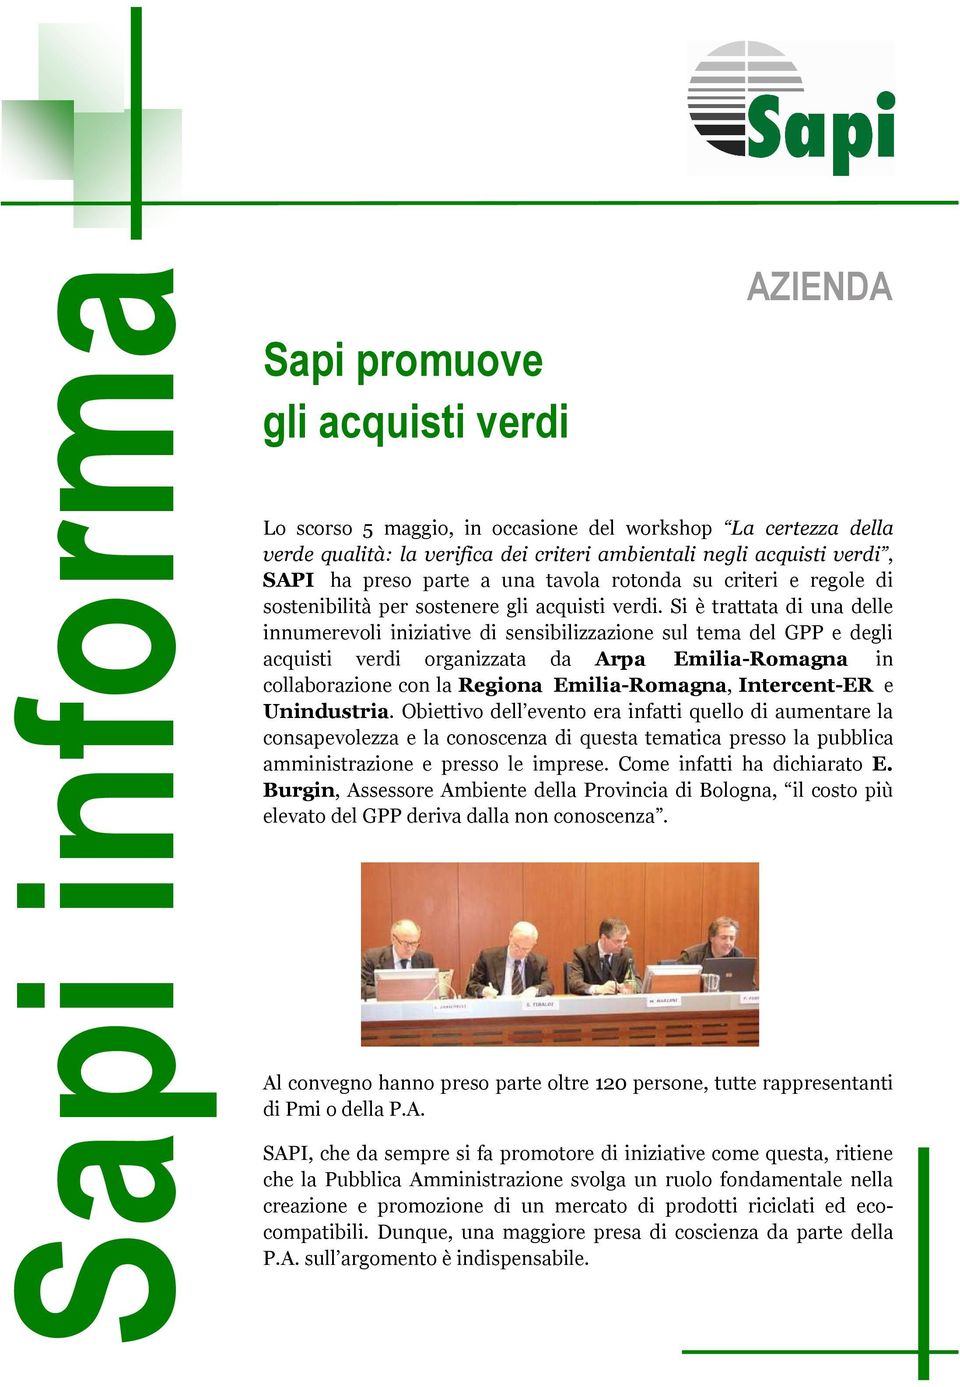 Si è trattata di una delle innumerevoli iniziative di sensibilizzazione sul tema del GPP e degli acquisti verdi organizzata da Arpa Emilia-Romagna in collaborazione con la Regiona Emilia-Romagna,